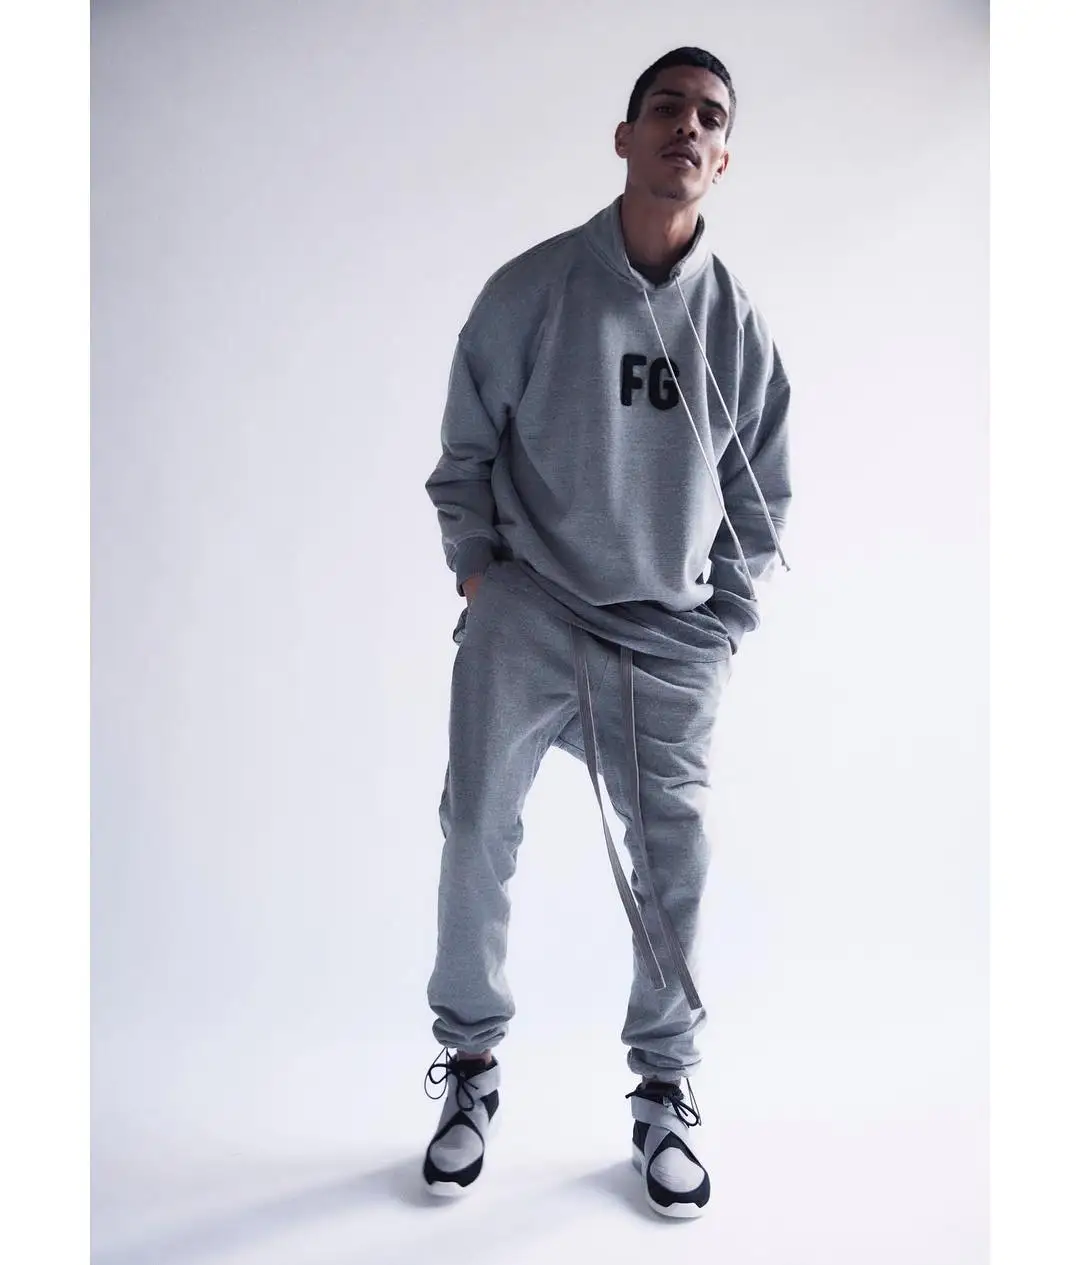 Kanye West FG толстовка с надписью Мужской пуловер Новое поступление Модные Лучшие Качественные свитшоты хип толстовки уличная одежда